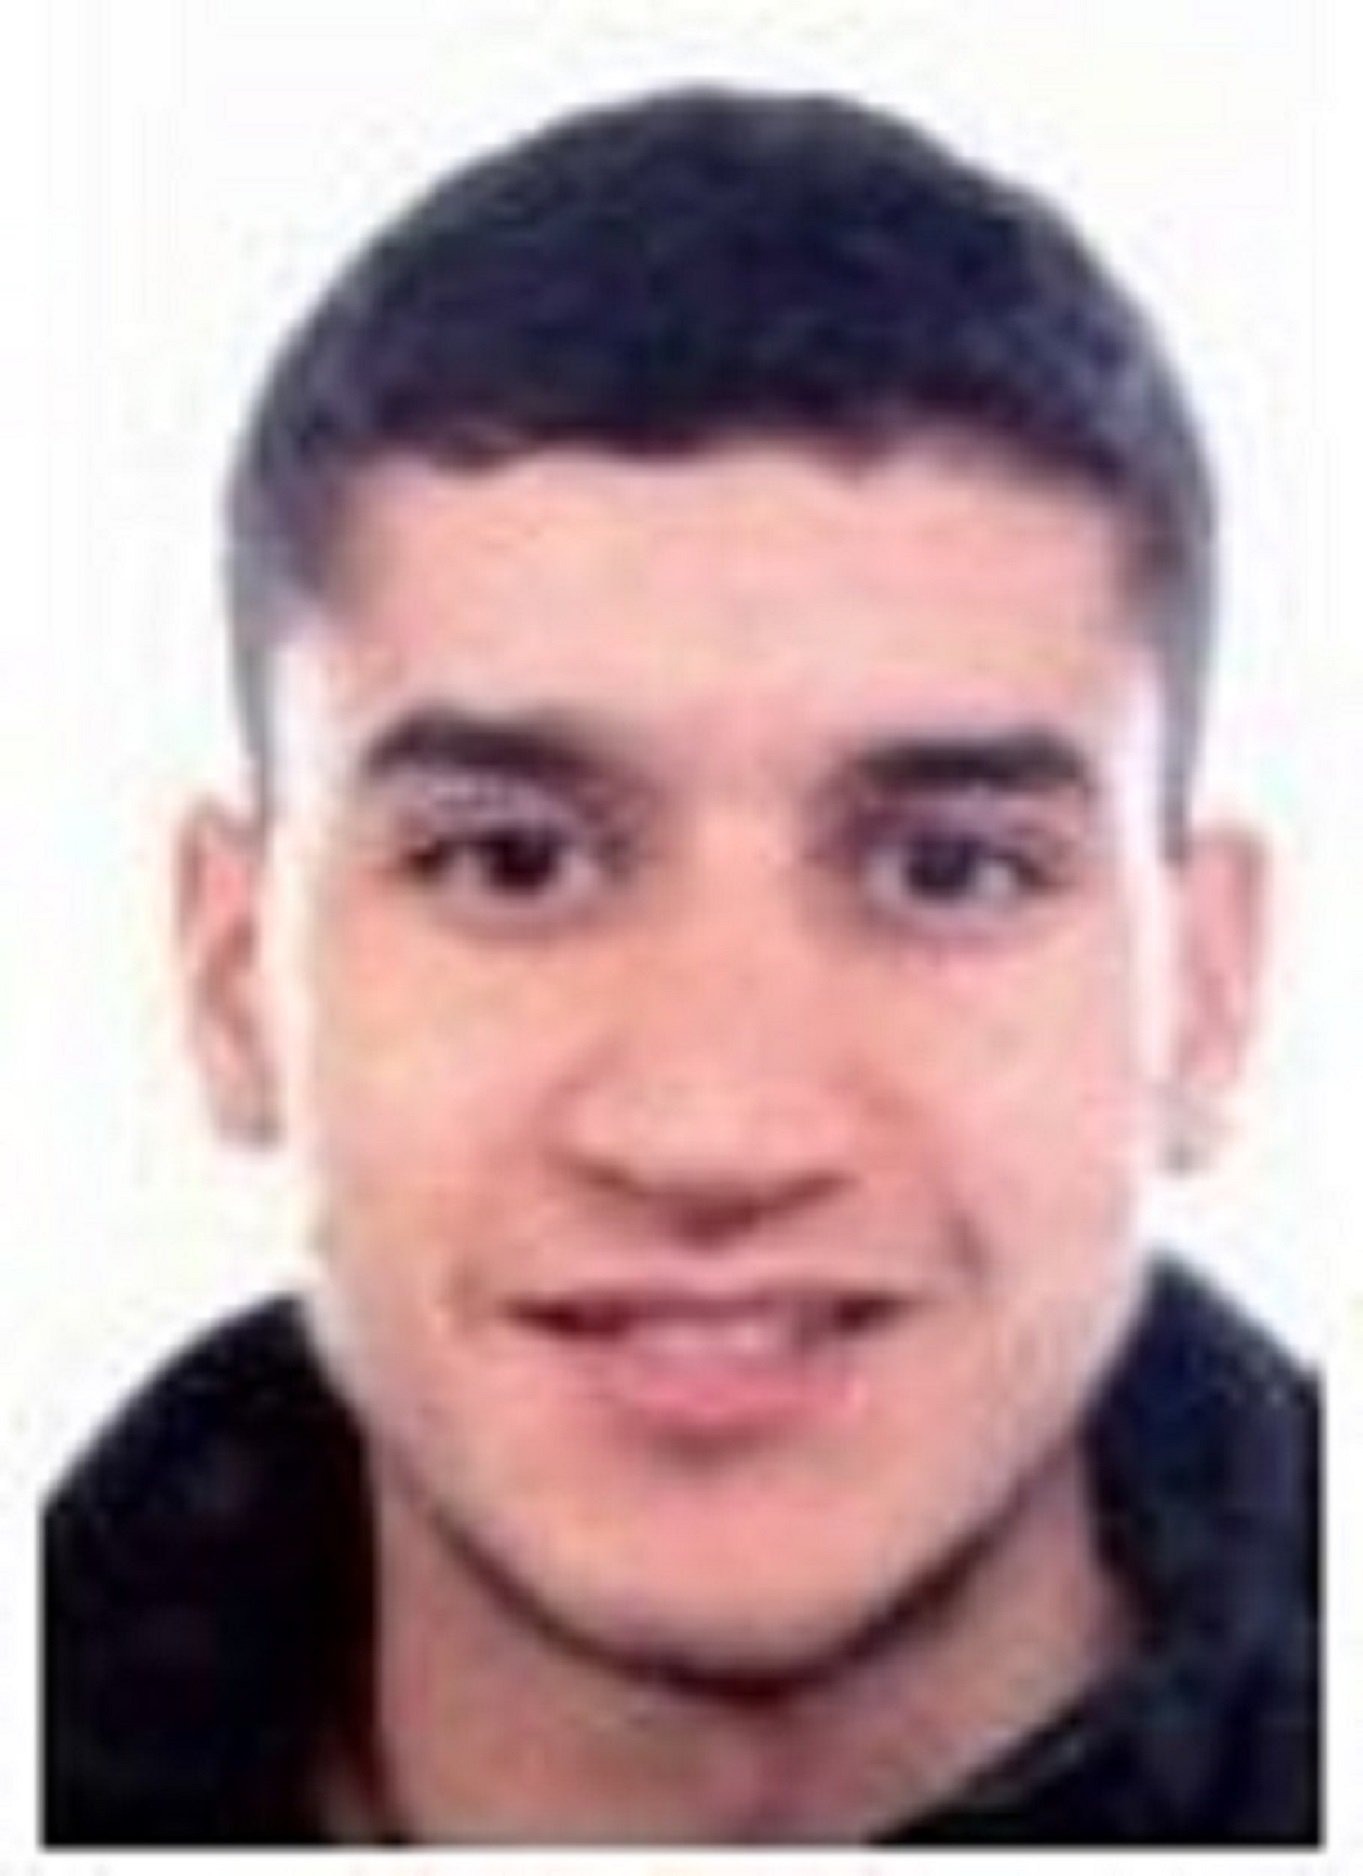 La policía pide colaboración ciudadana para encontrar Younes Abouyaaqoub